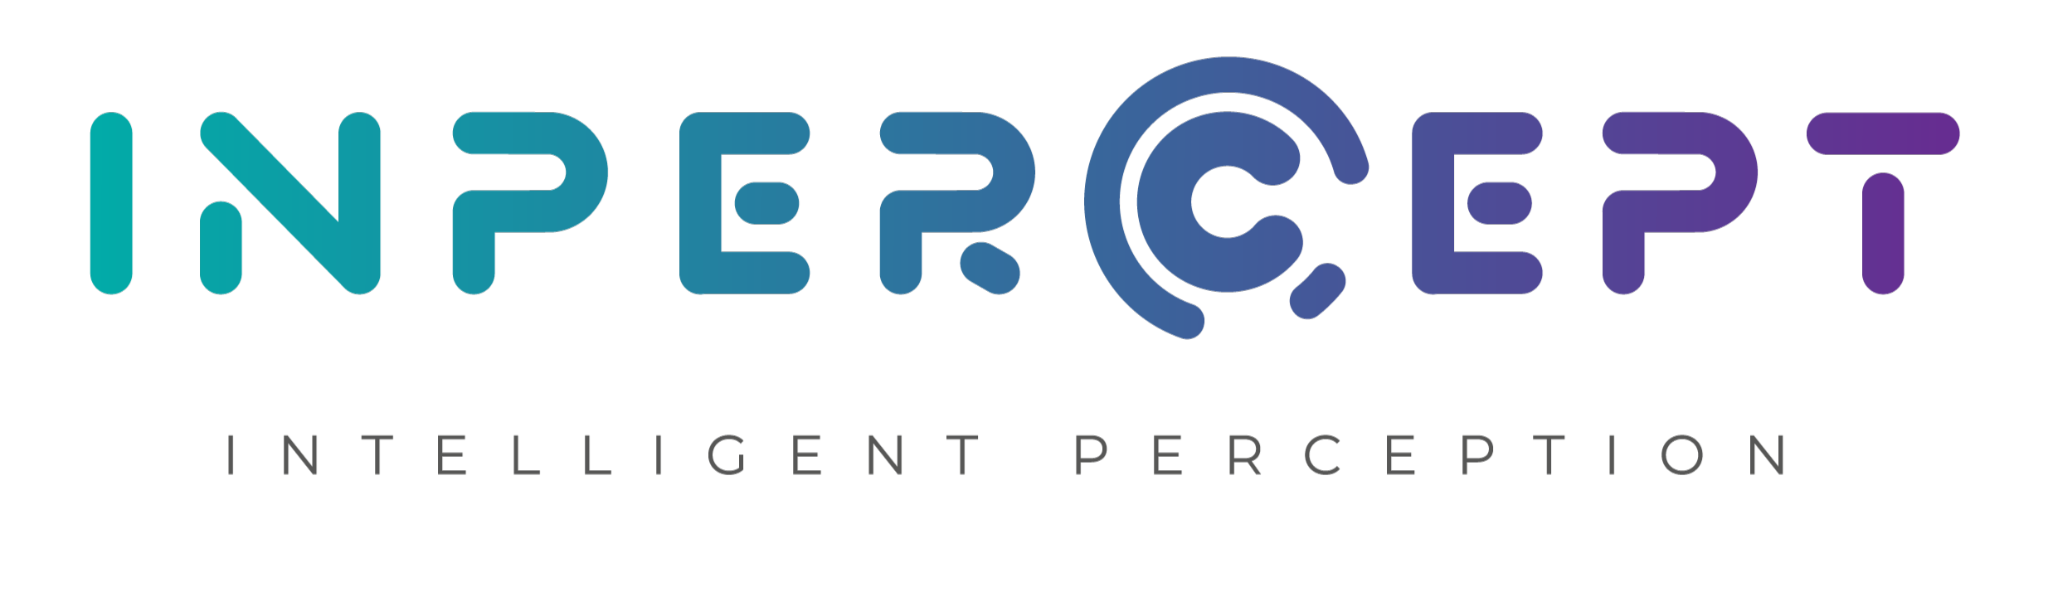 INPERCEPT logo - Proyecto de investigación